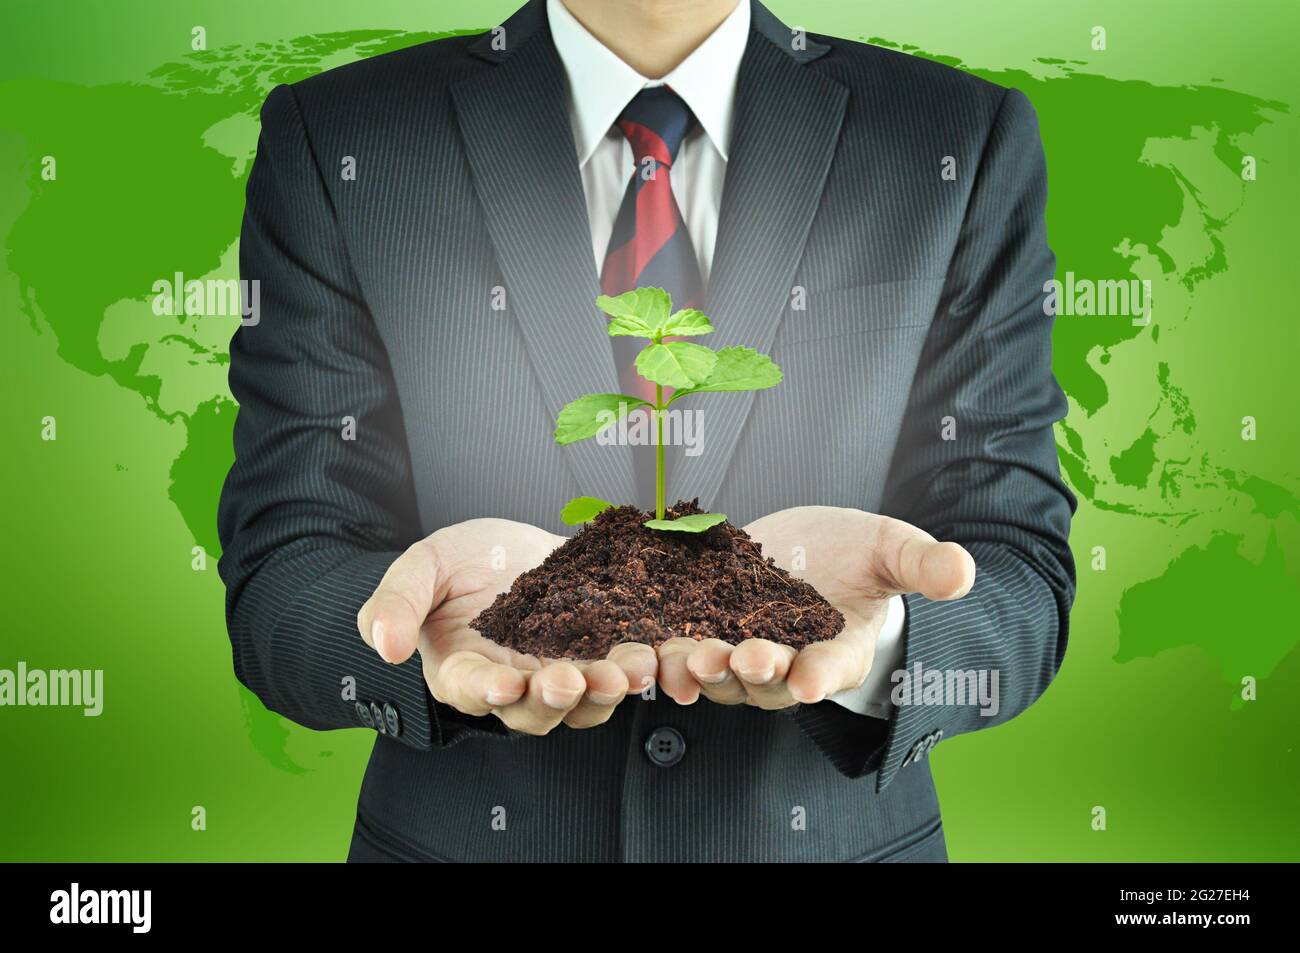 Geschäftsmann hält grünen Keimling mit Boden - nachhaltiges Entwicklungs- & Naturschutzkonzept Stockfoto